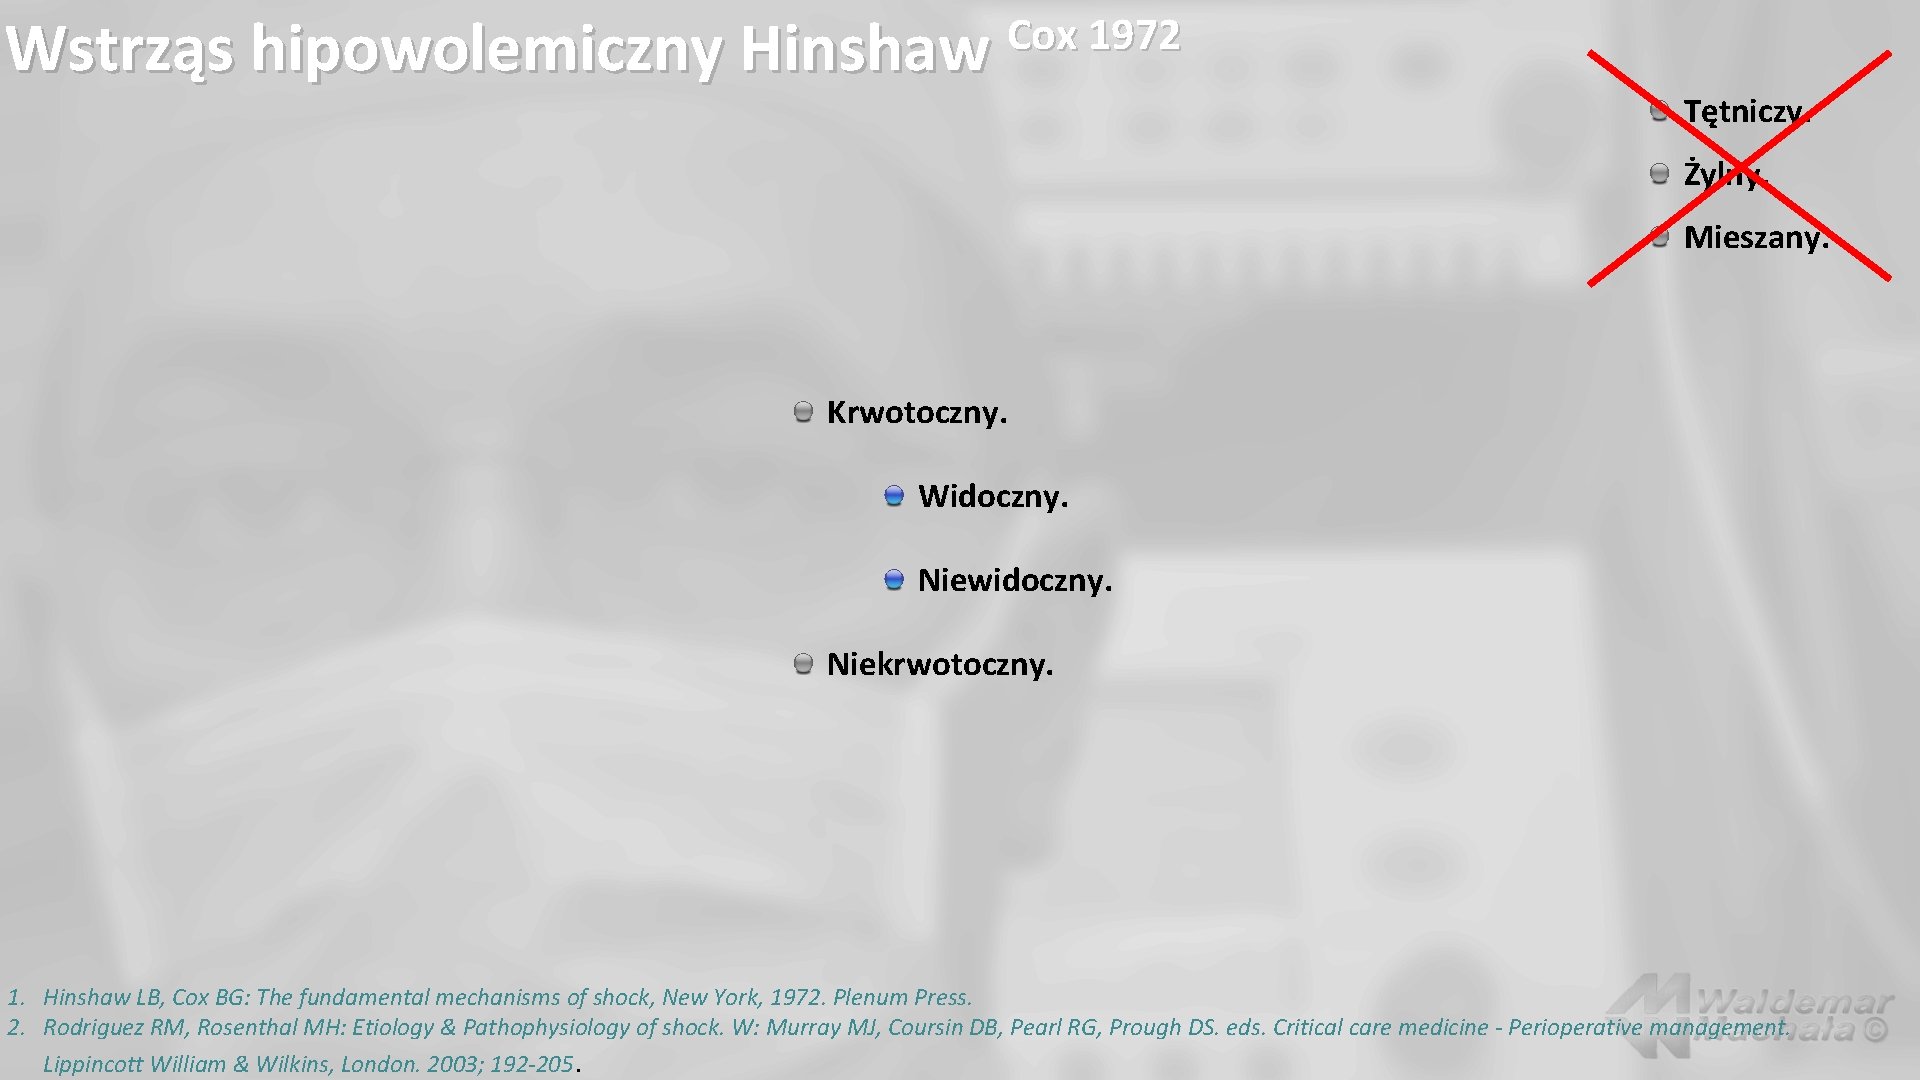 Wstrząs hipowolemiczny Hinshaw Cox 1972 Tętniczy. Żylny. Mieszany. Krwotoczny. Widoczny. Niewidoczny. Niekrwotoczny. 1. Hinshaw